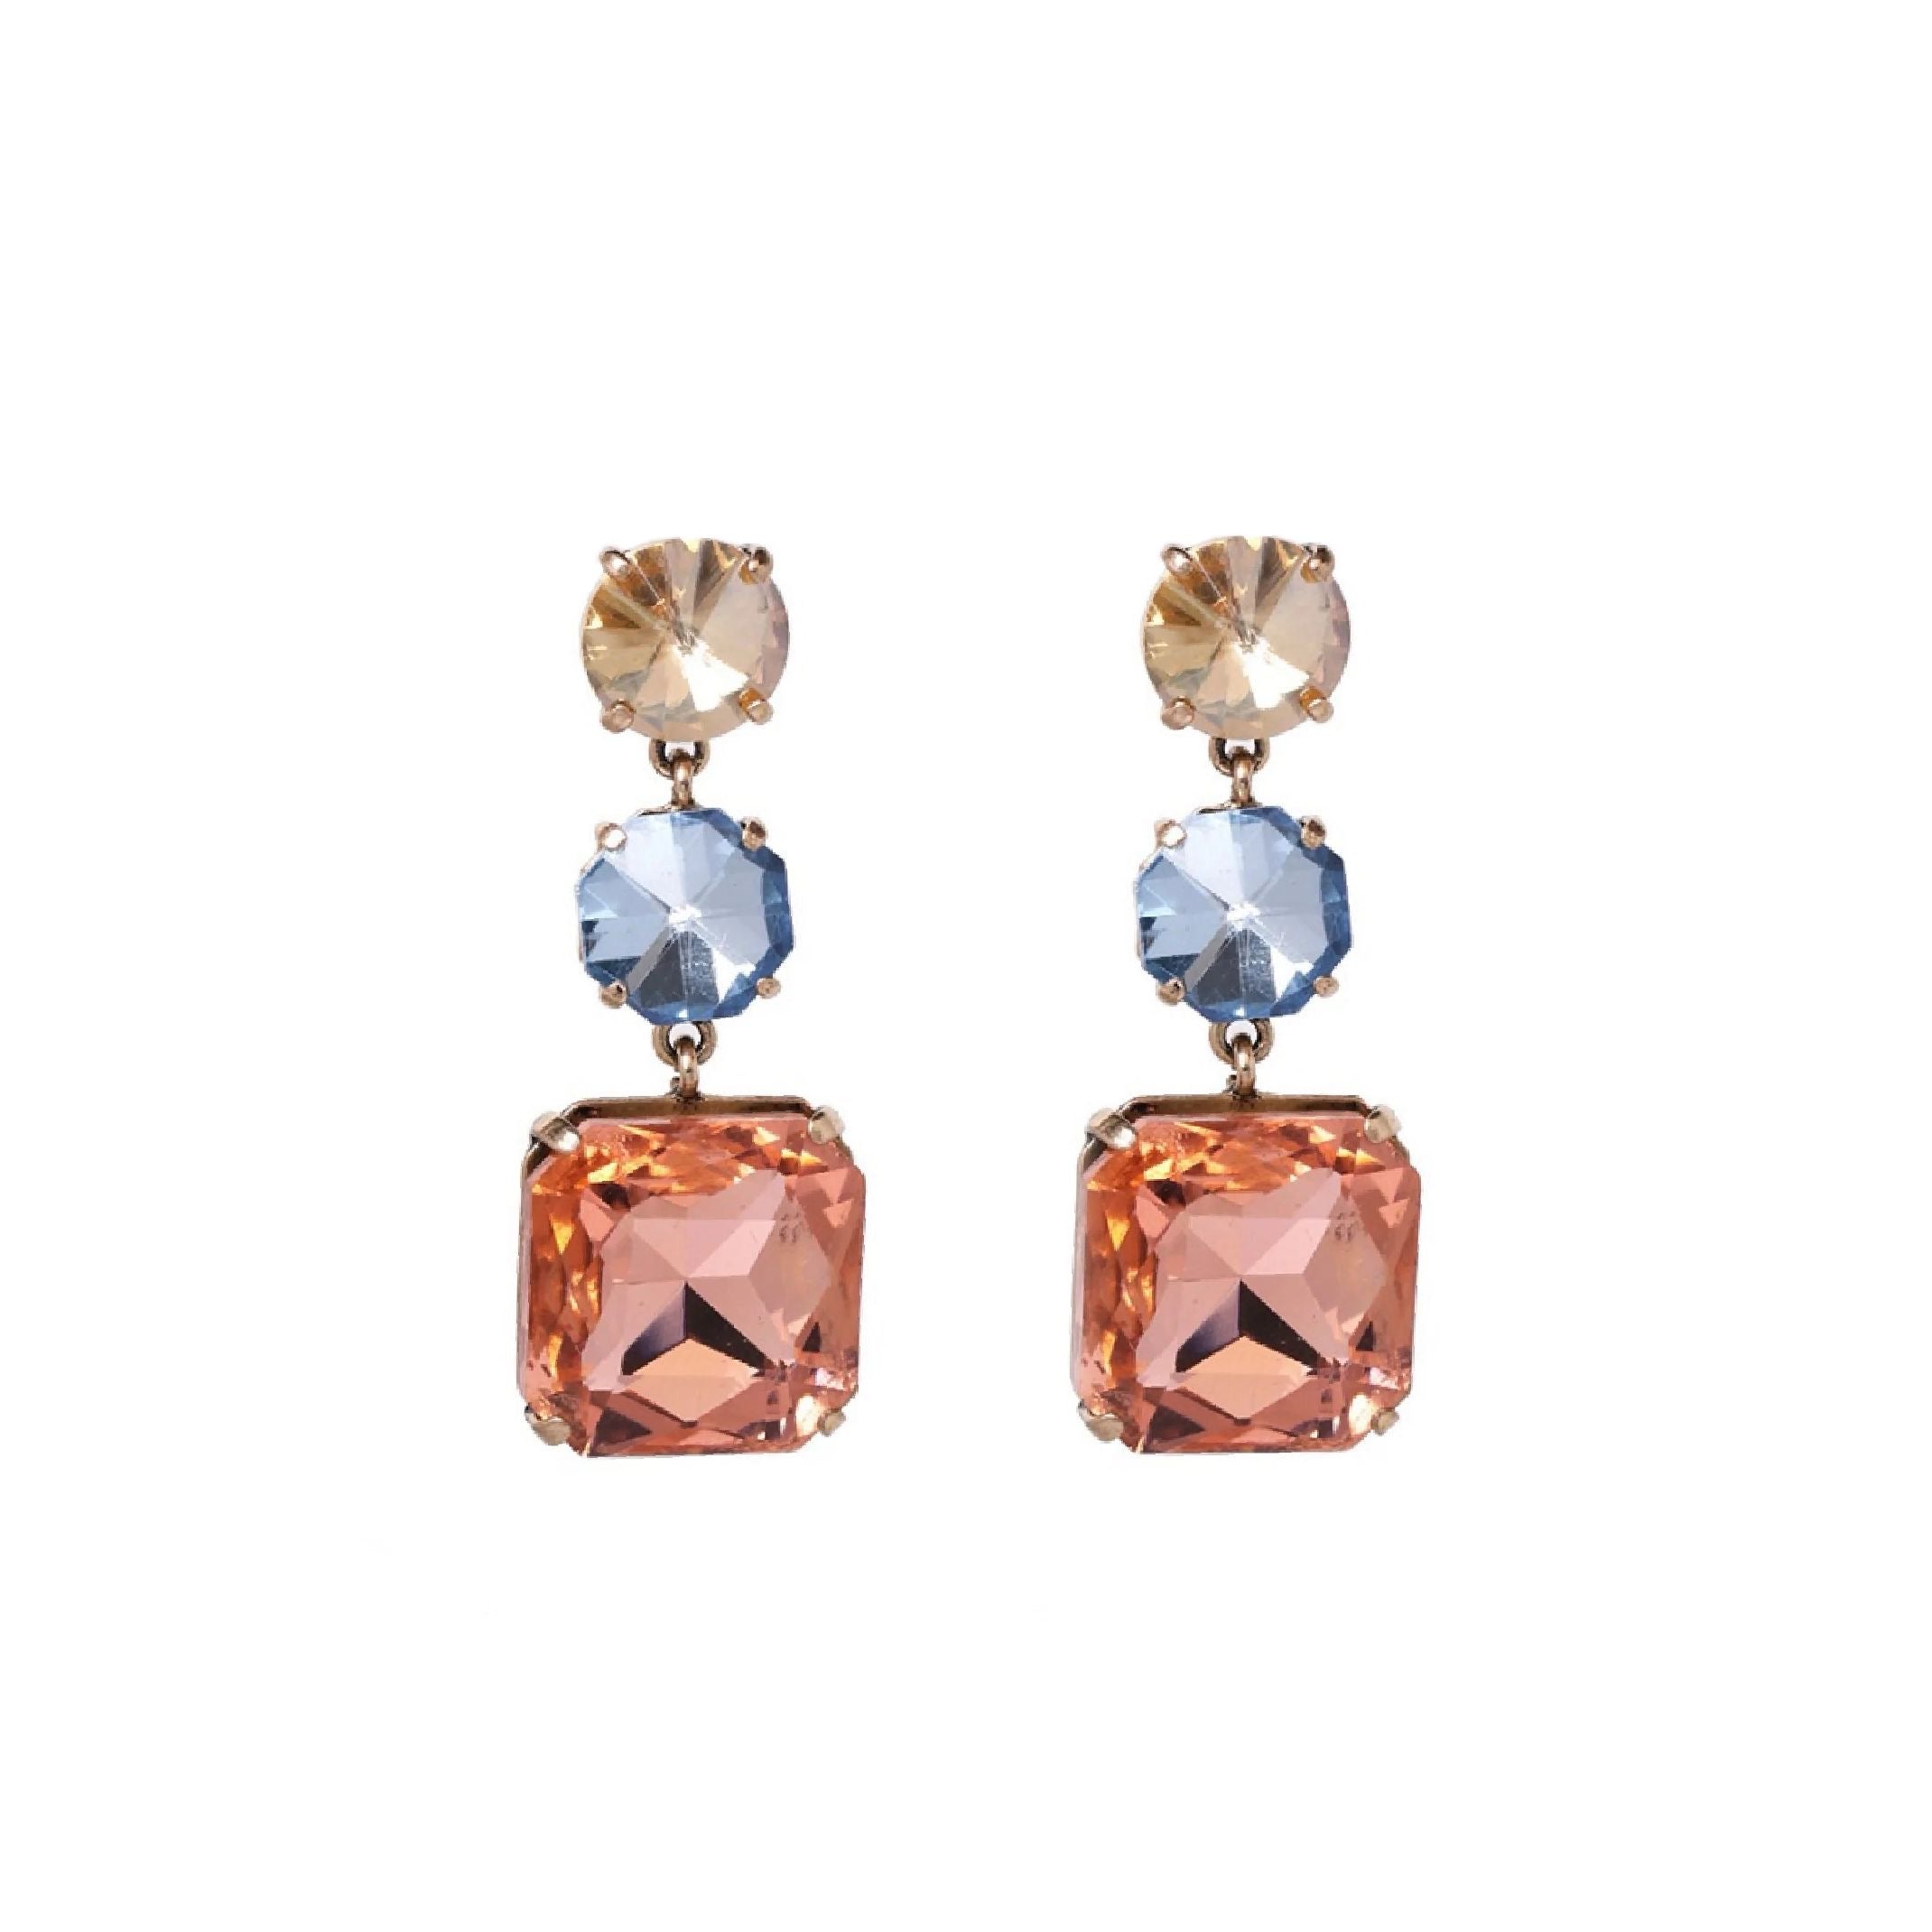 Sunset jewel earrings 